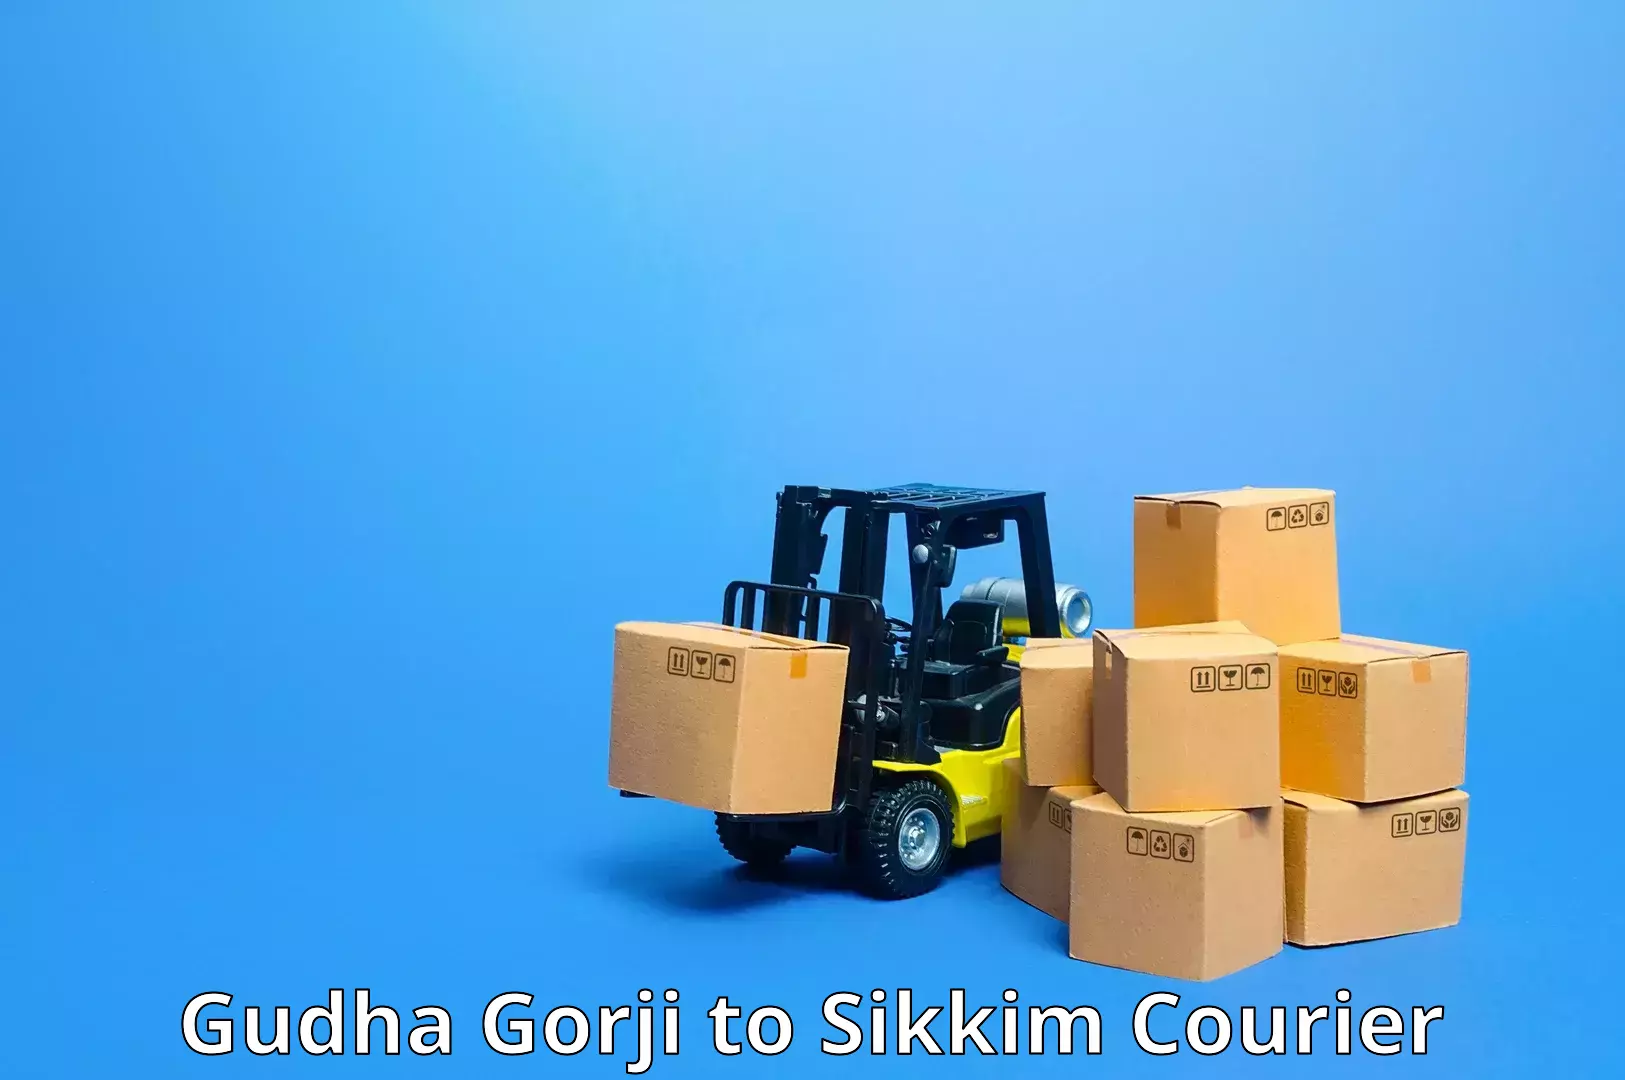 Tech-enabled shipping Gudha Gorji to Sikkim